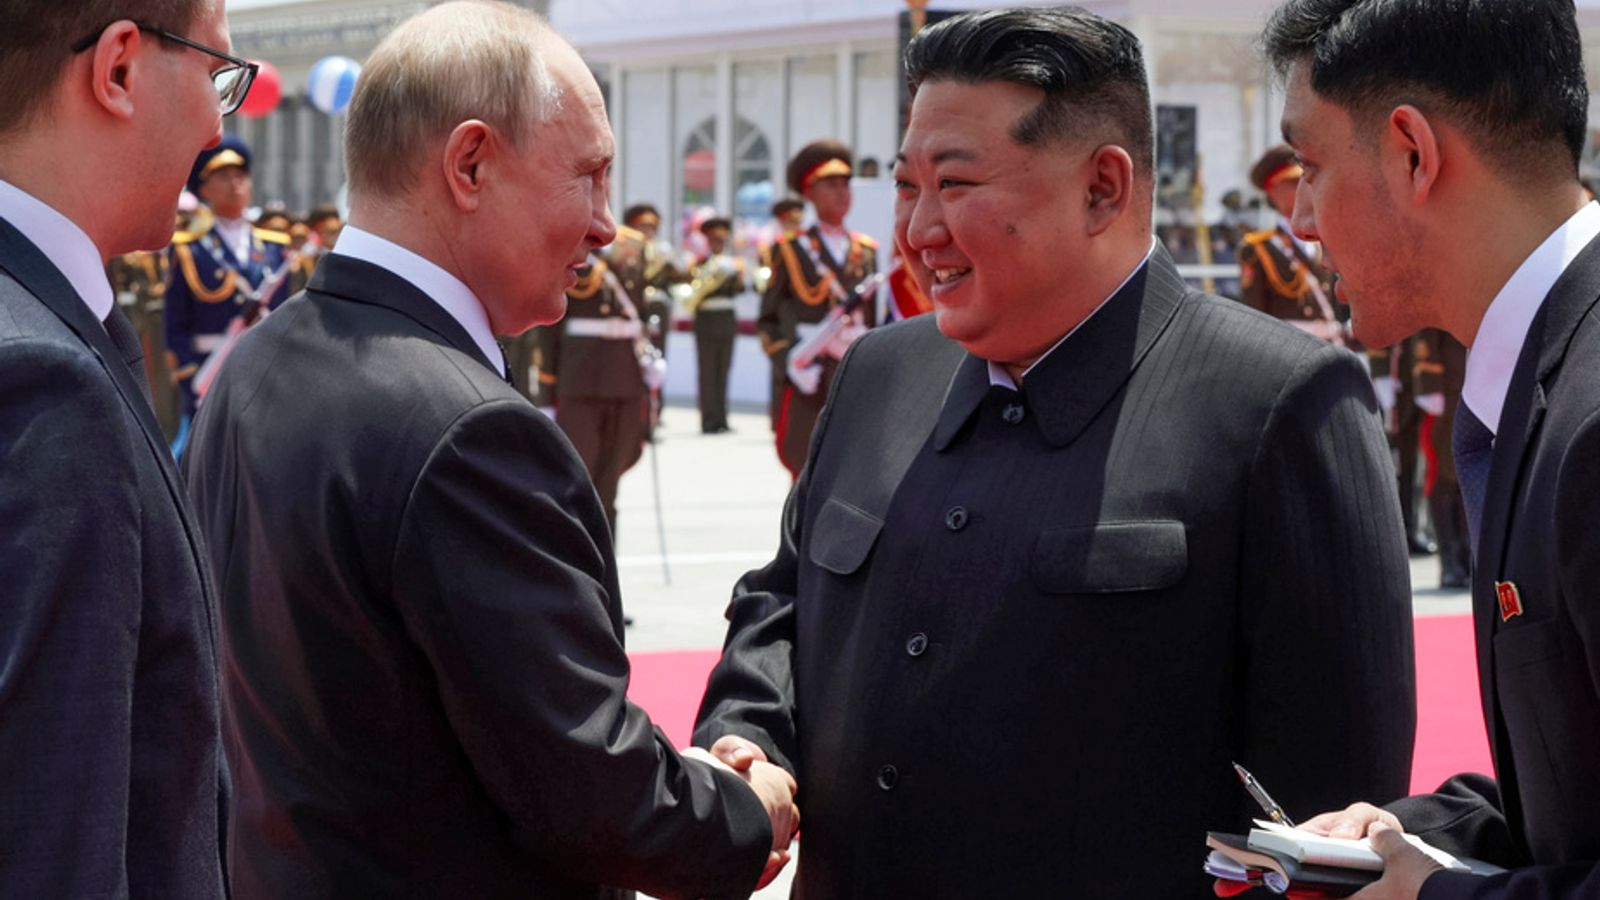 Il viaggio di Putin in Corea del Nord conferma la relazione, ma la Cina starà a guardare  notizie dal mondo